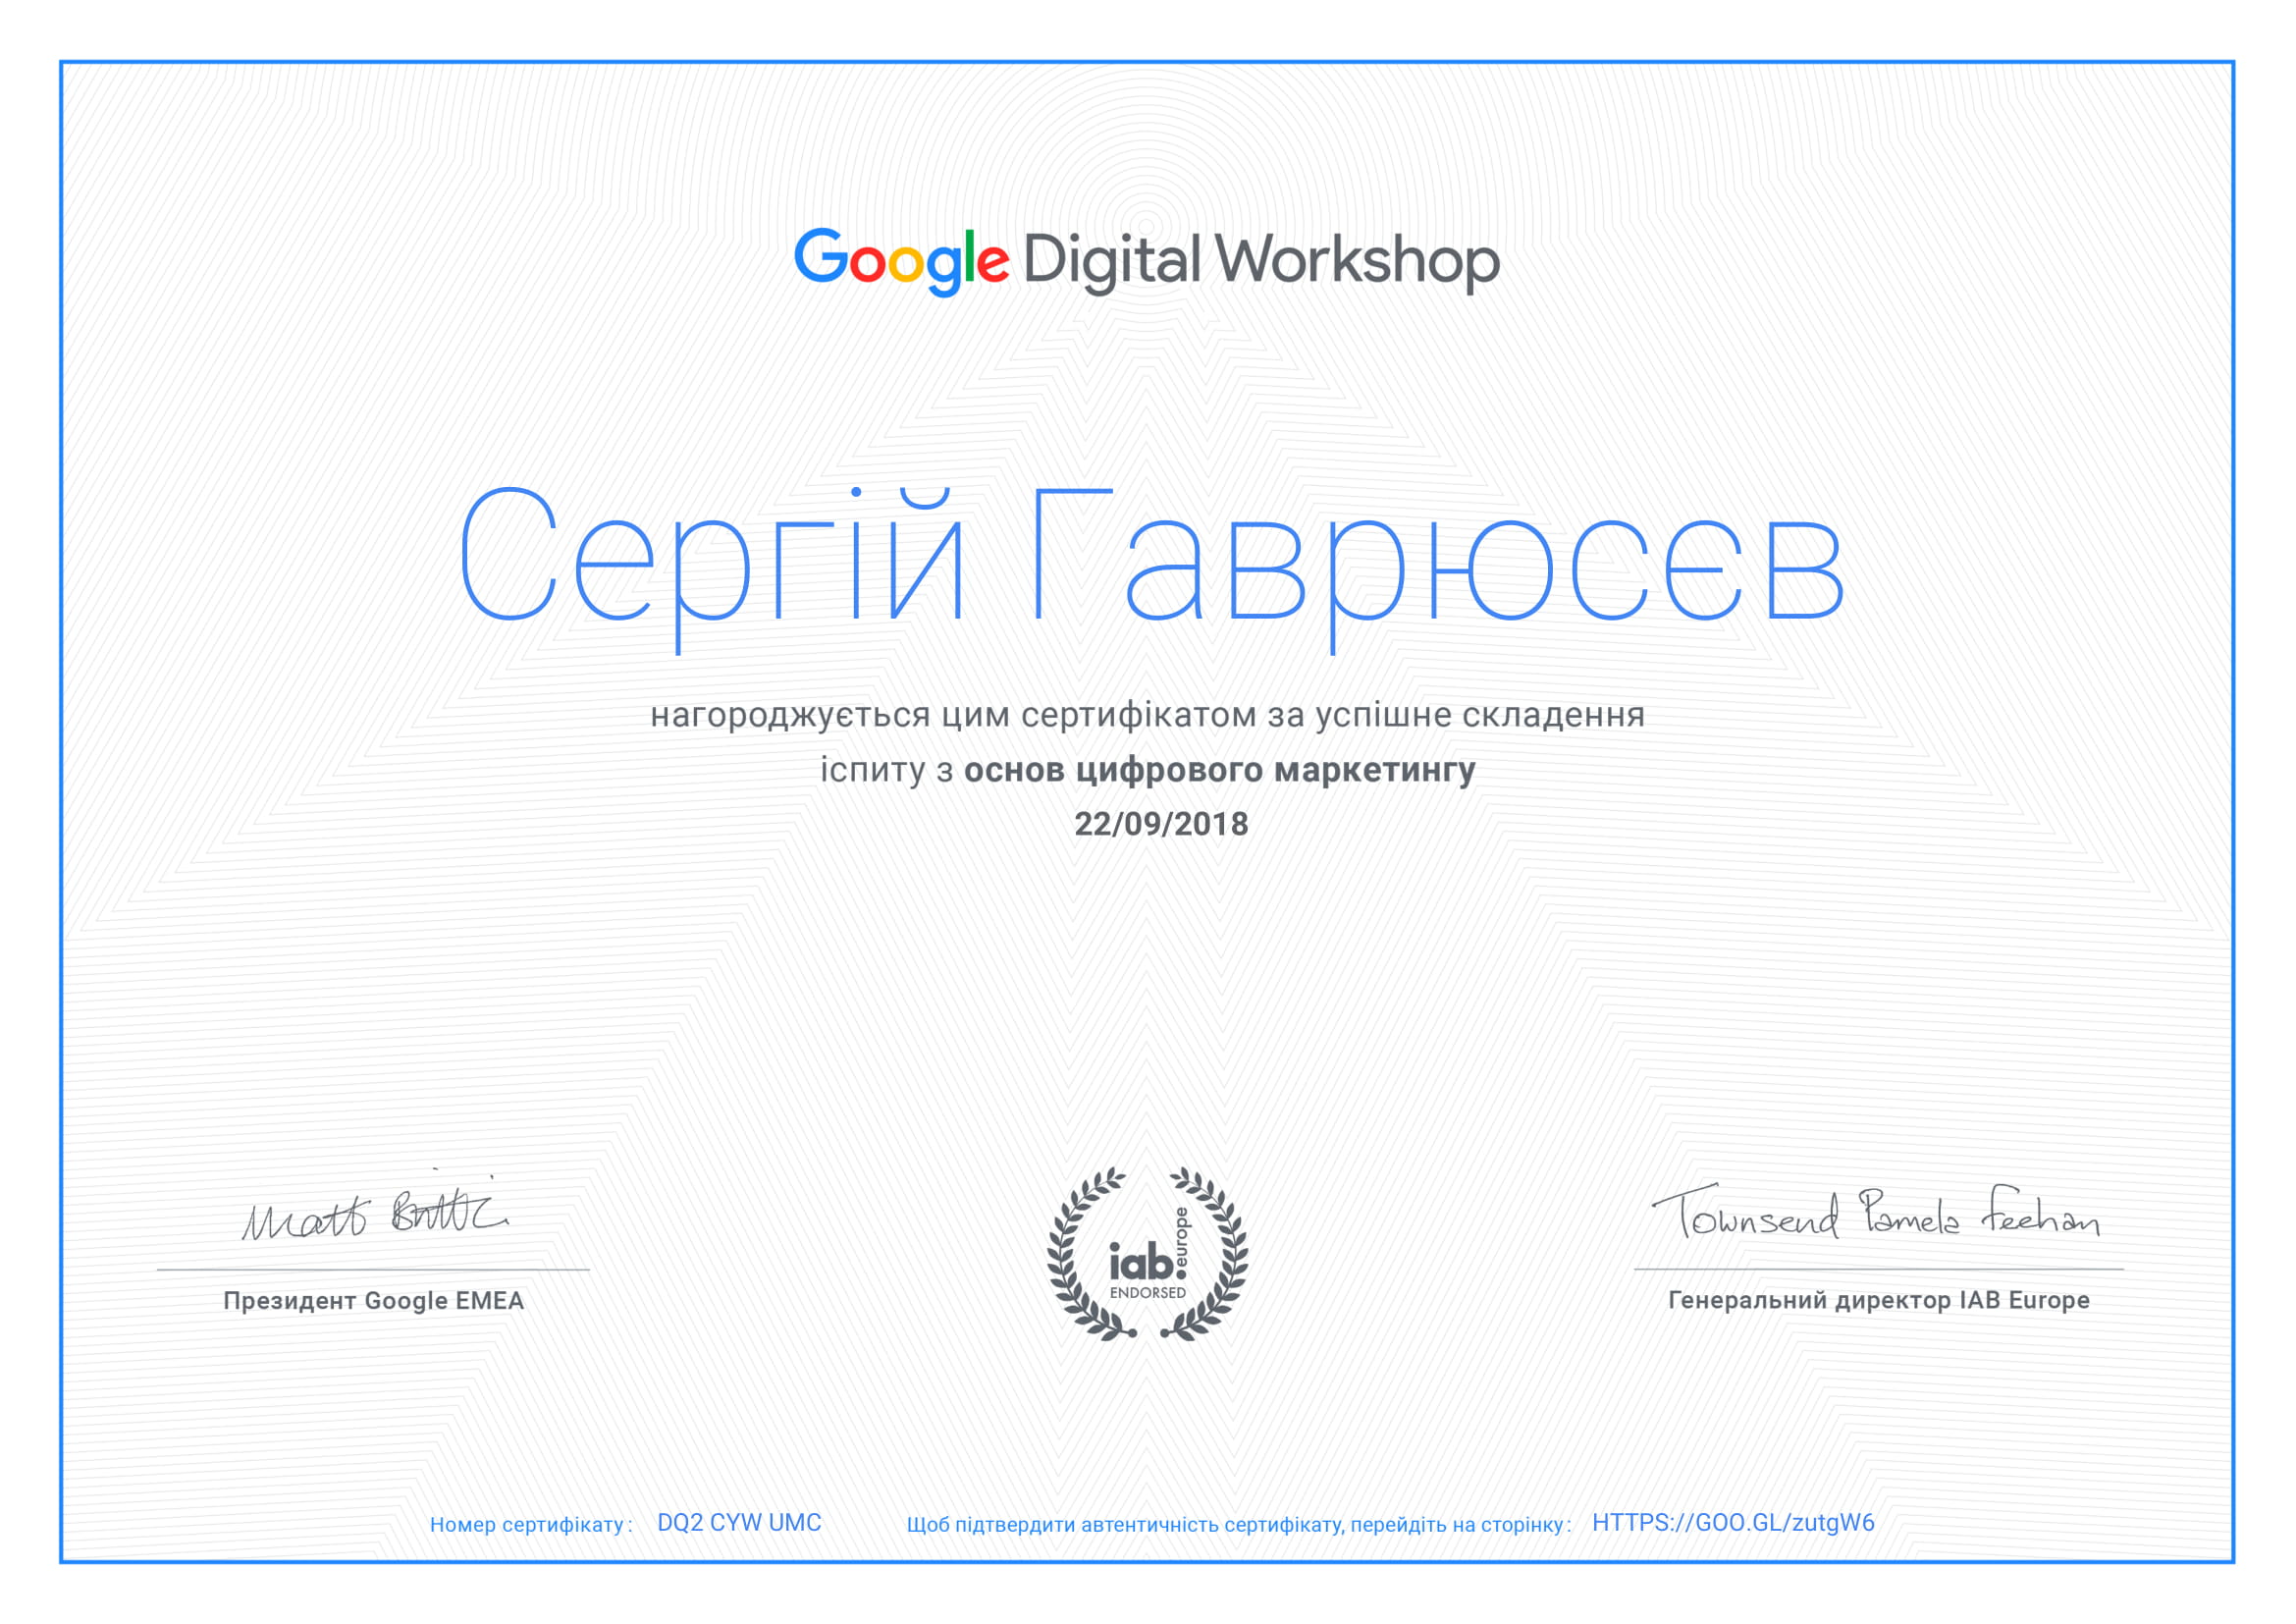 Оновив сертифікат "Цифровий маркетинг" від Гугл Академії